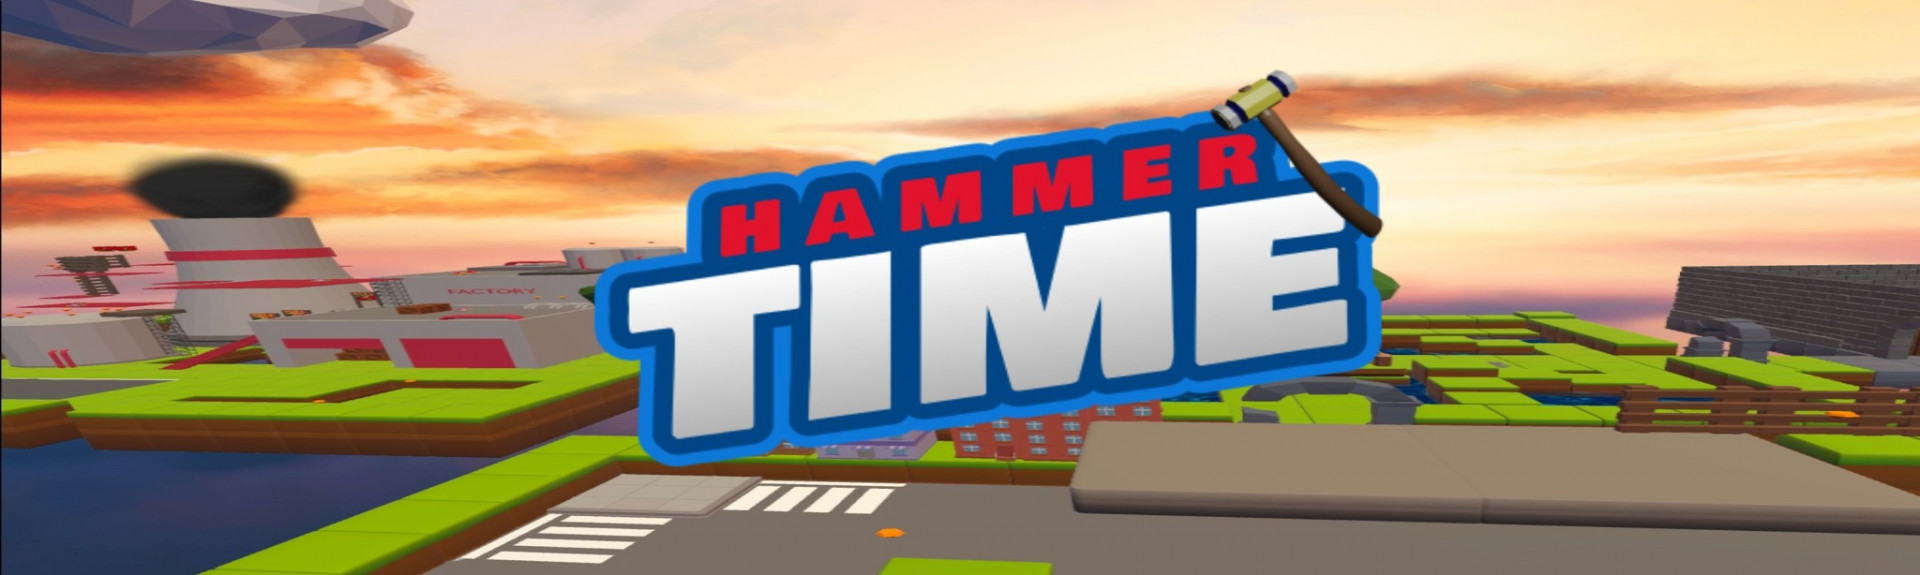 Hammer Time: VR Platformer